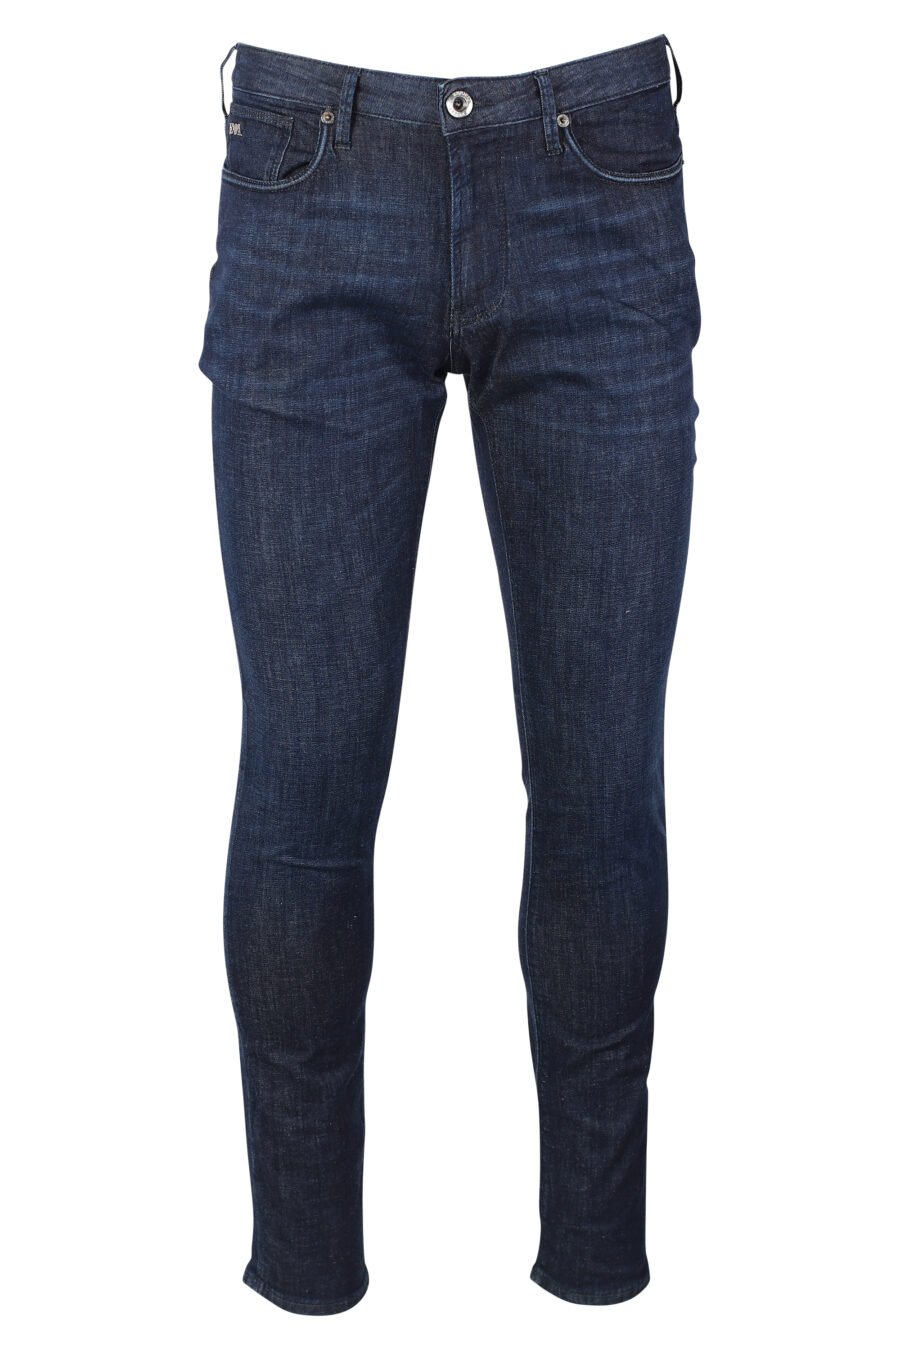 Pantalón vaquero azul oscuro semidesgastado con minilogo metal - IMG 9926